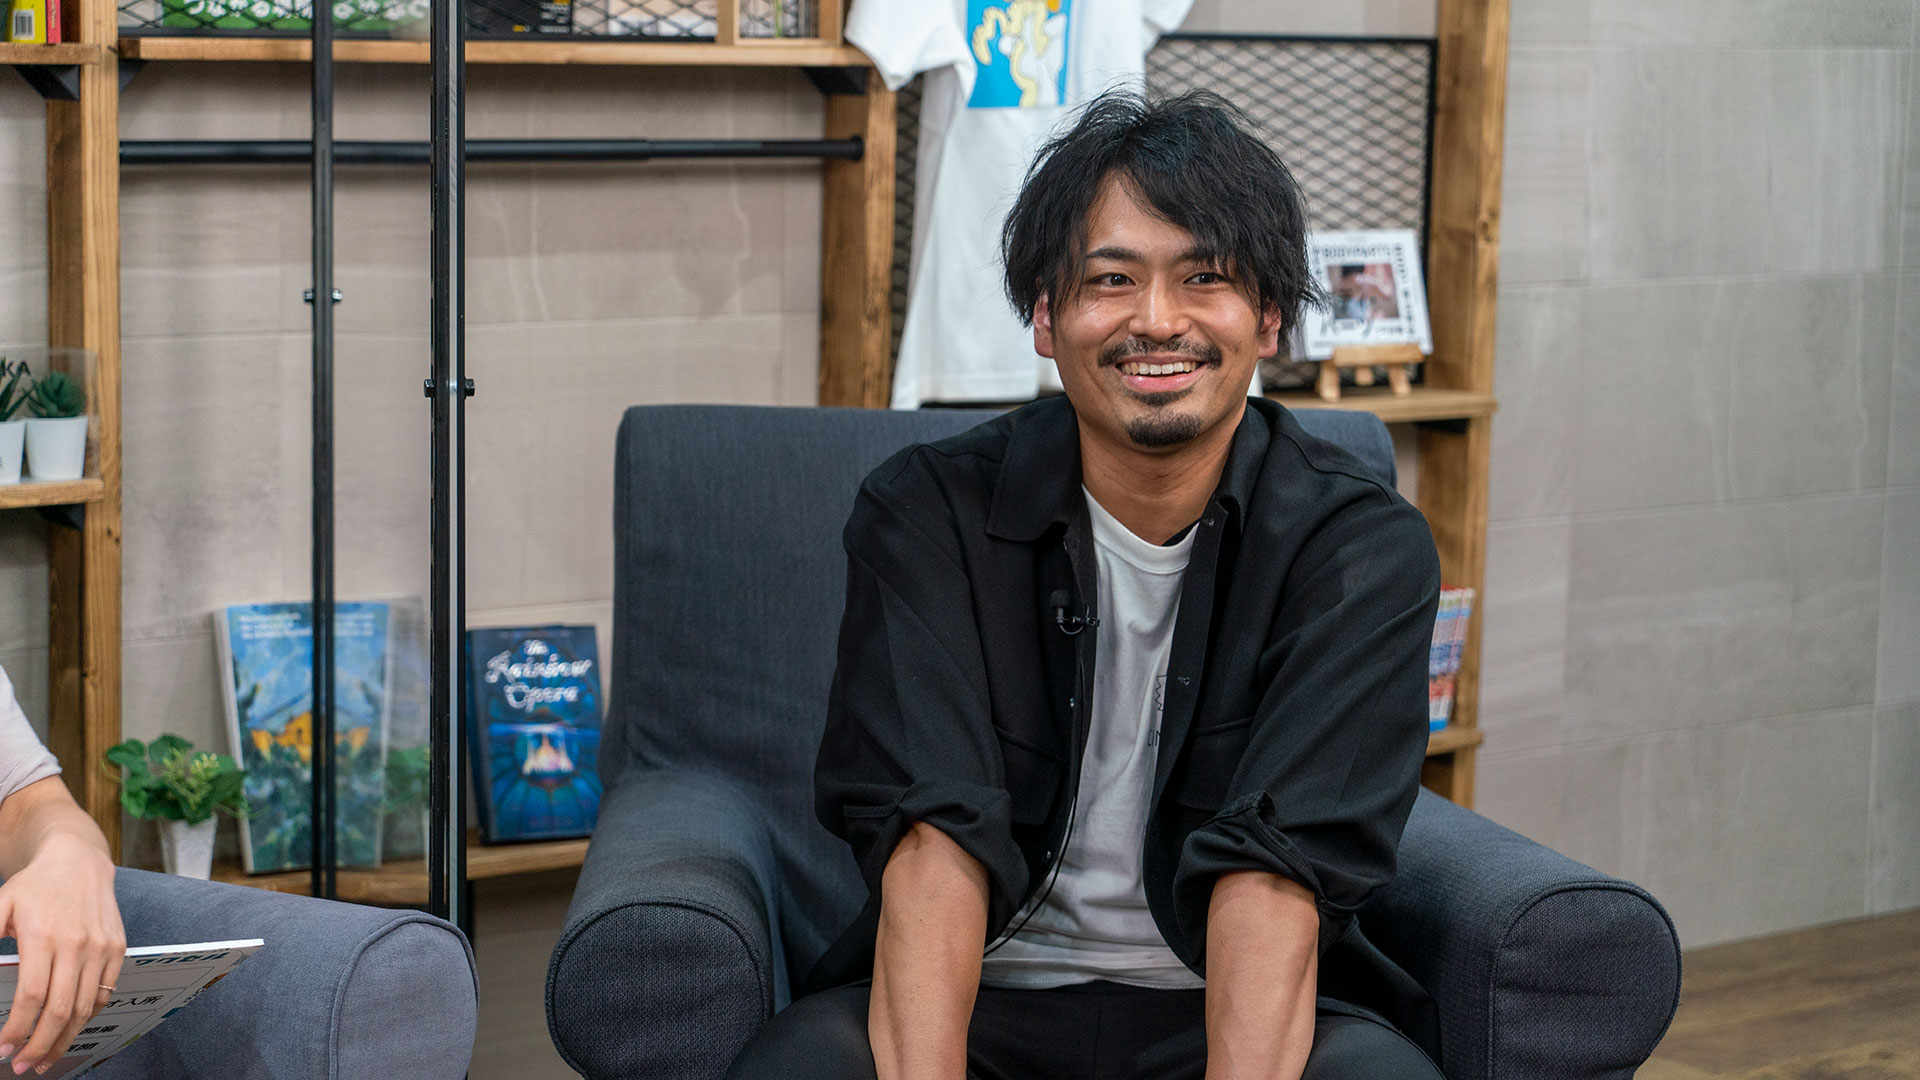 株式会社チャス代表取締役の菊池康弘さんと、ワクセルによるTALK SESSIONがログミーに掲載